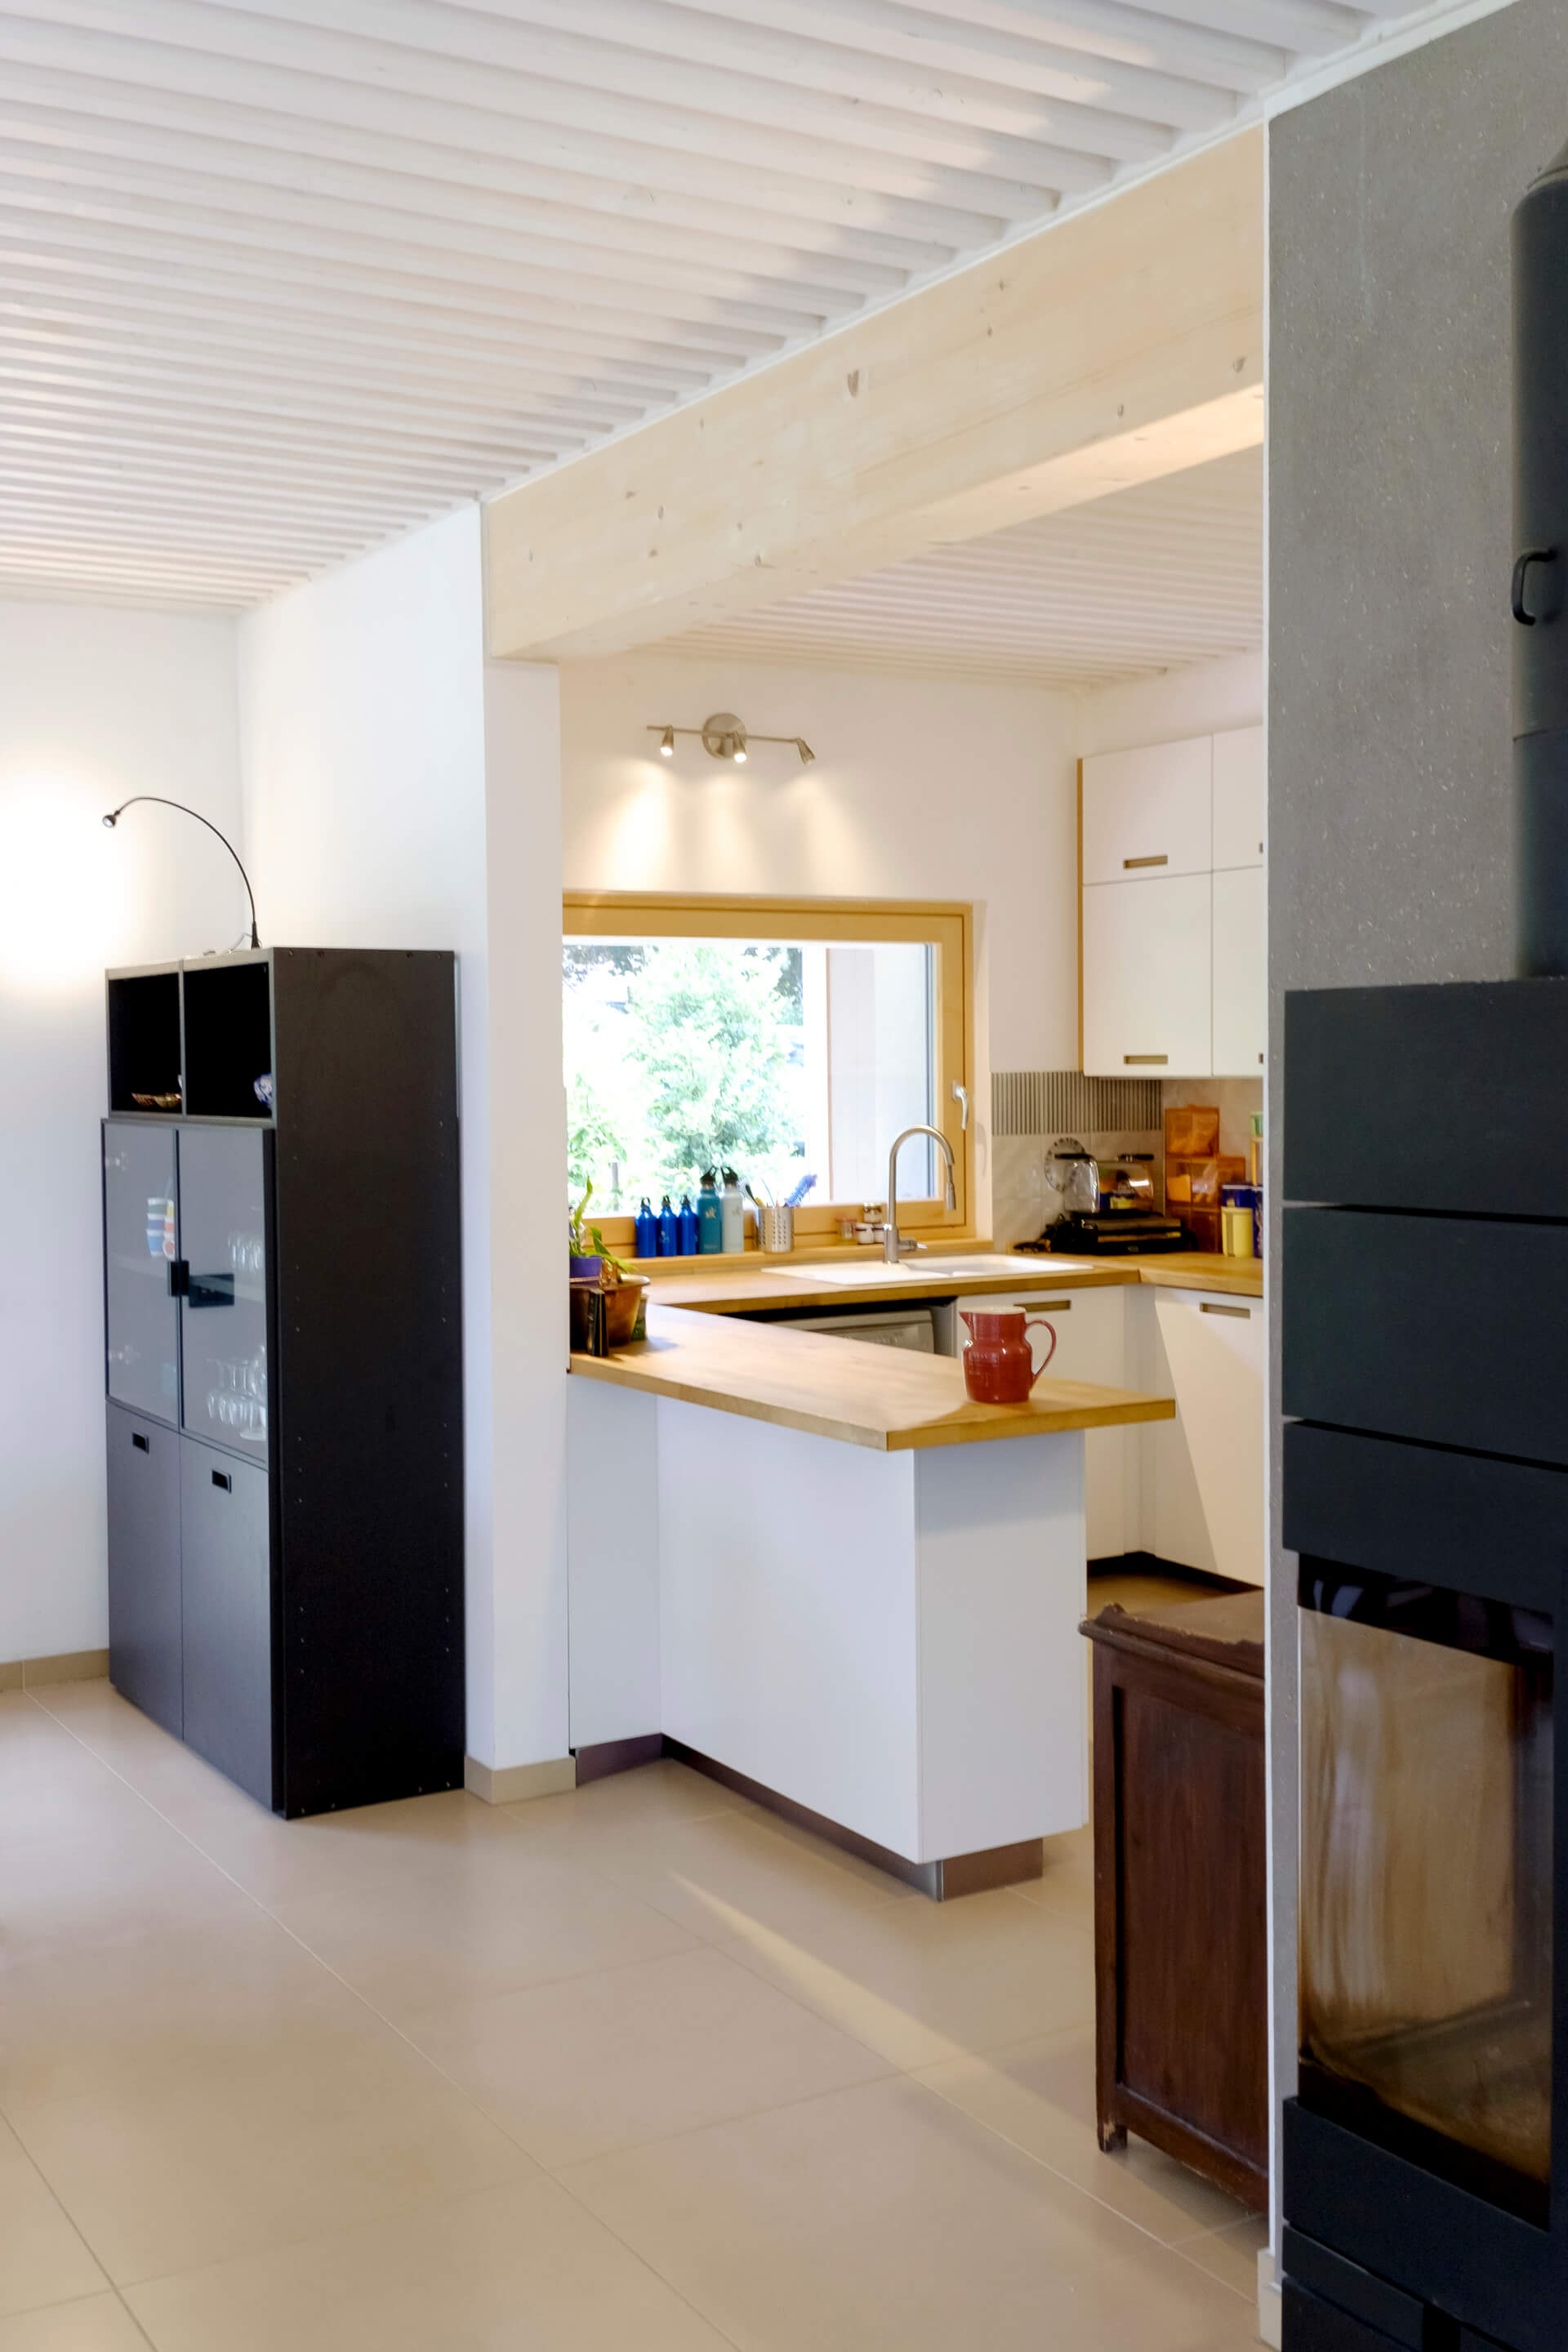 Ambiente interno casa passiva con finiture in legno